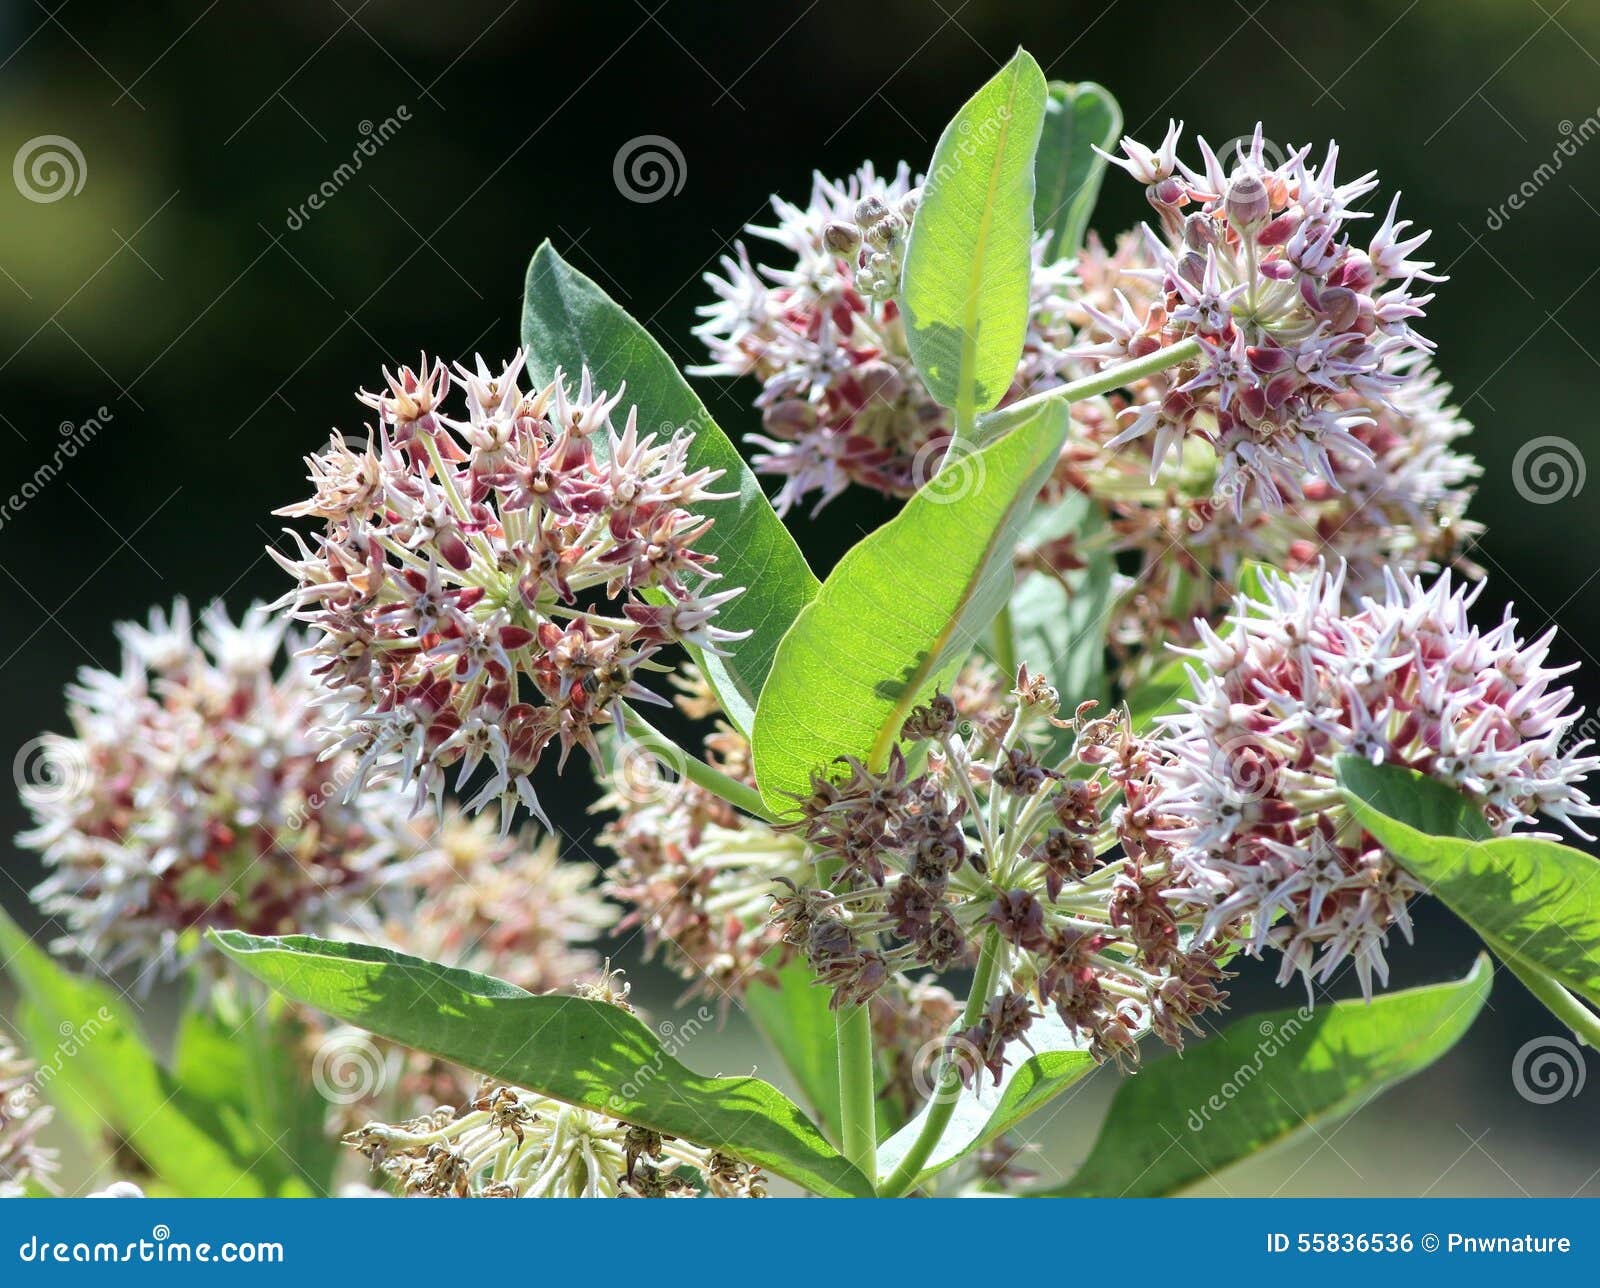 showy milkweed - asclepias speciosa